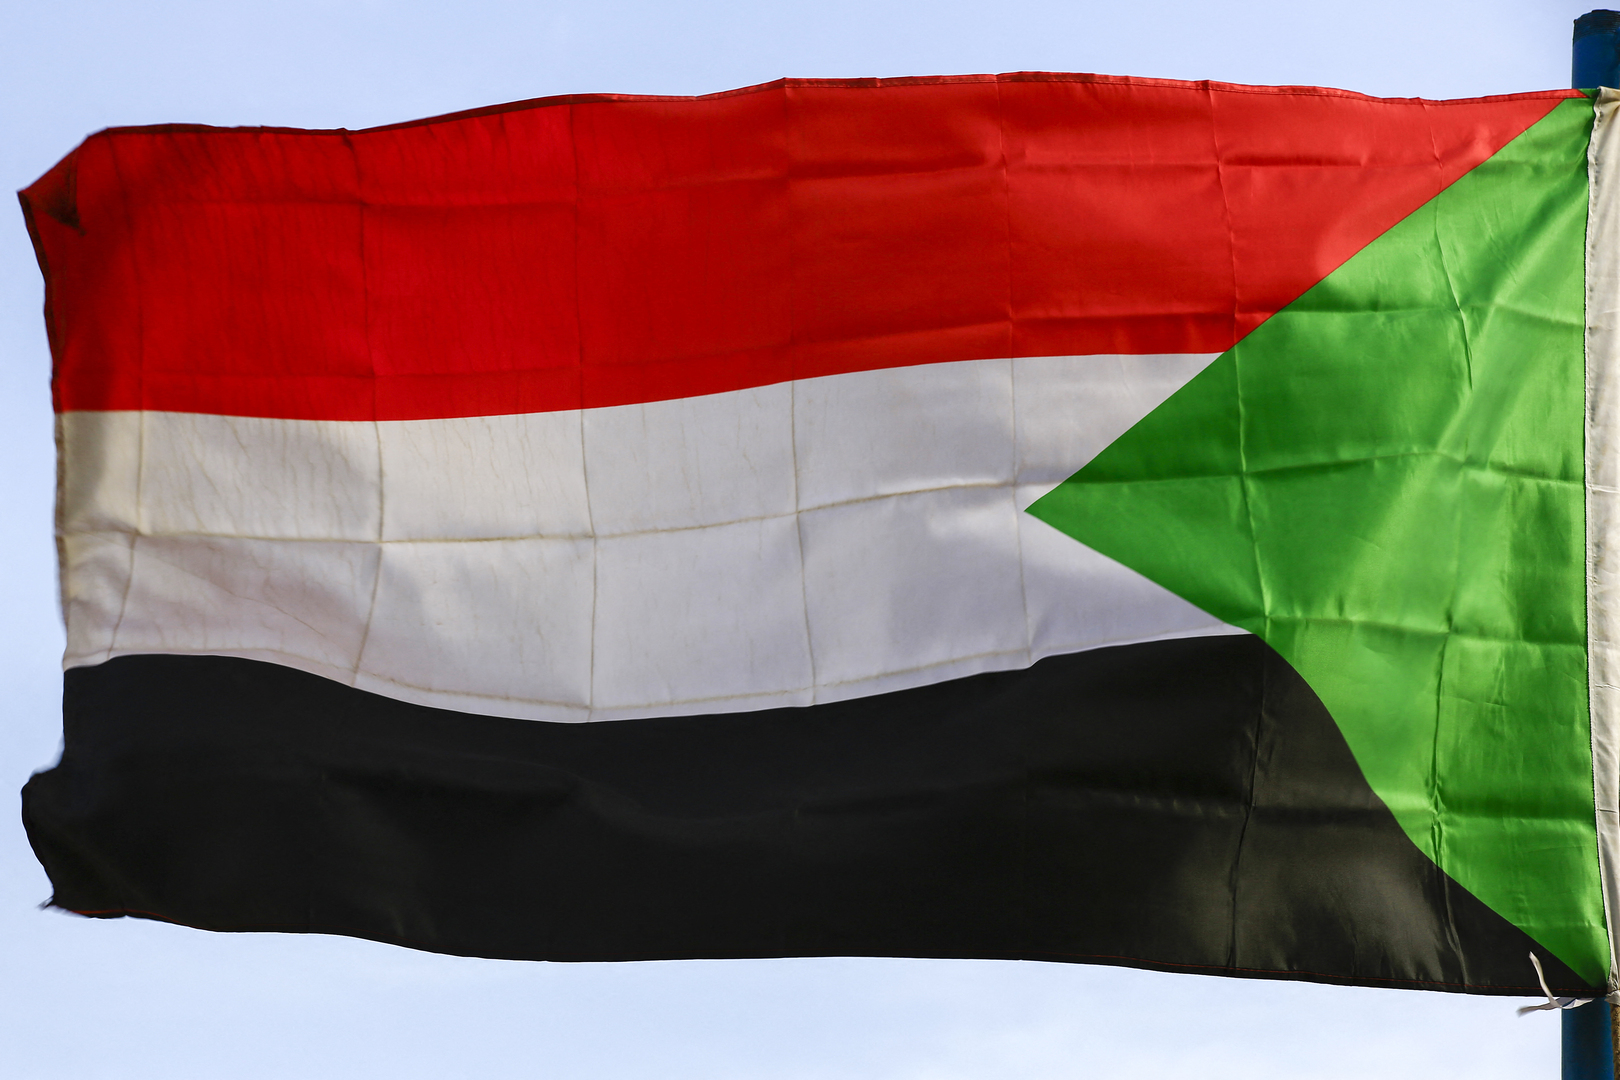 سفارة السودان لدى موسكو تفند أنباء عن طلب سوداني مقابل تنفيذ اتفاق عسكري مع روسيا